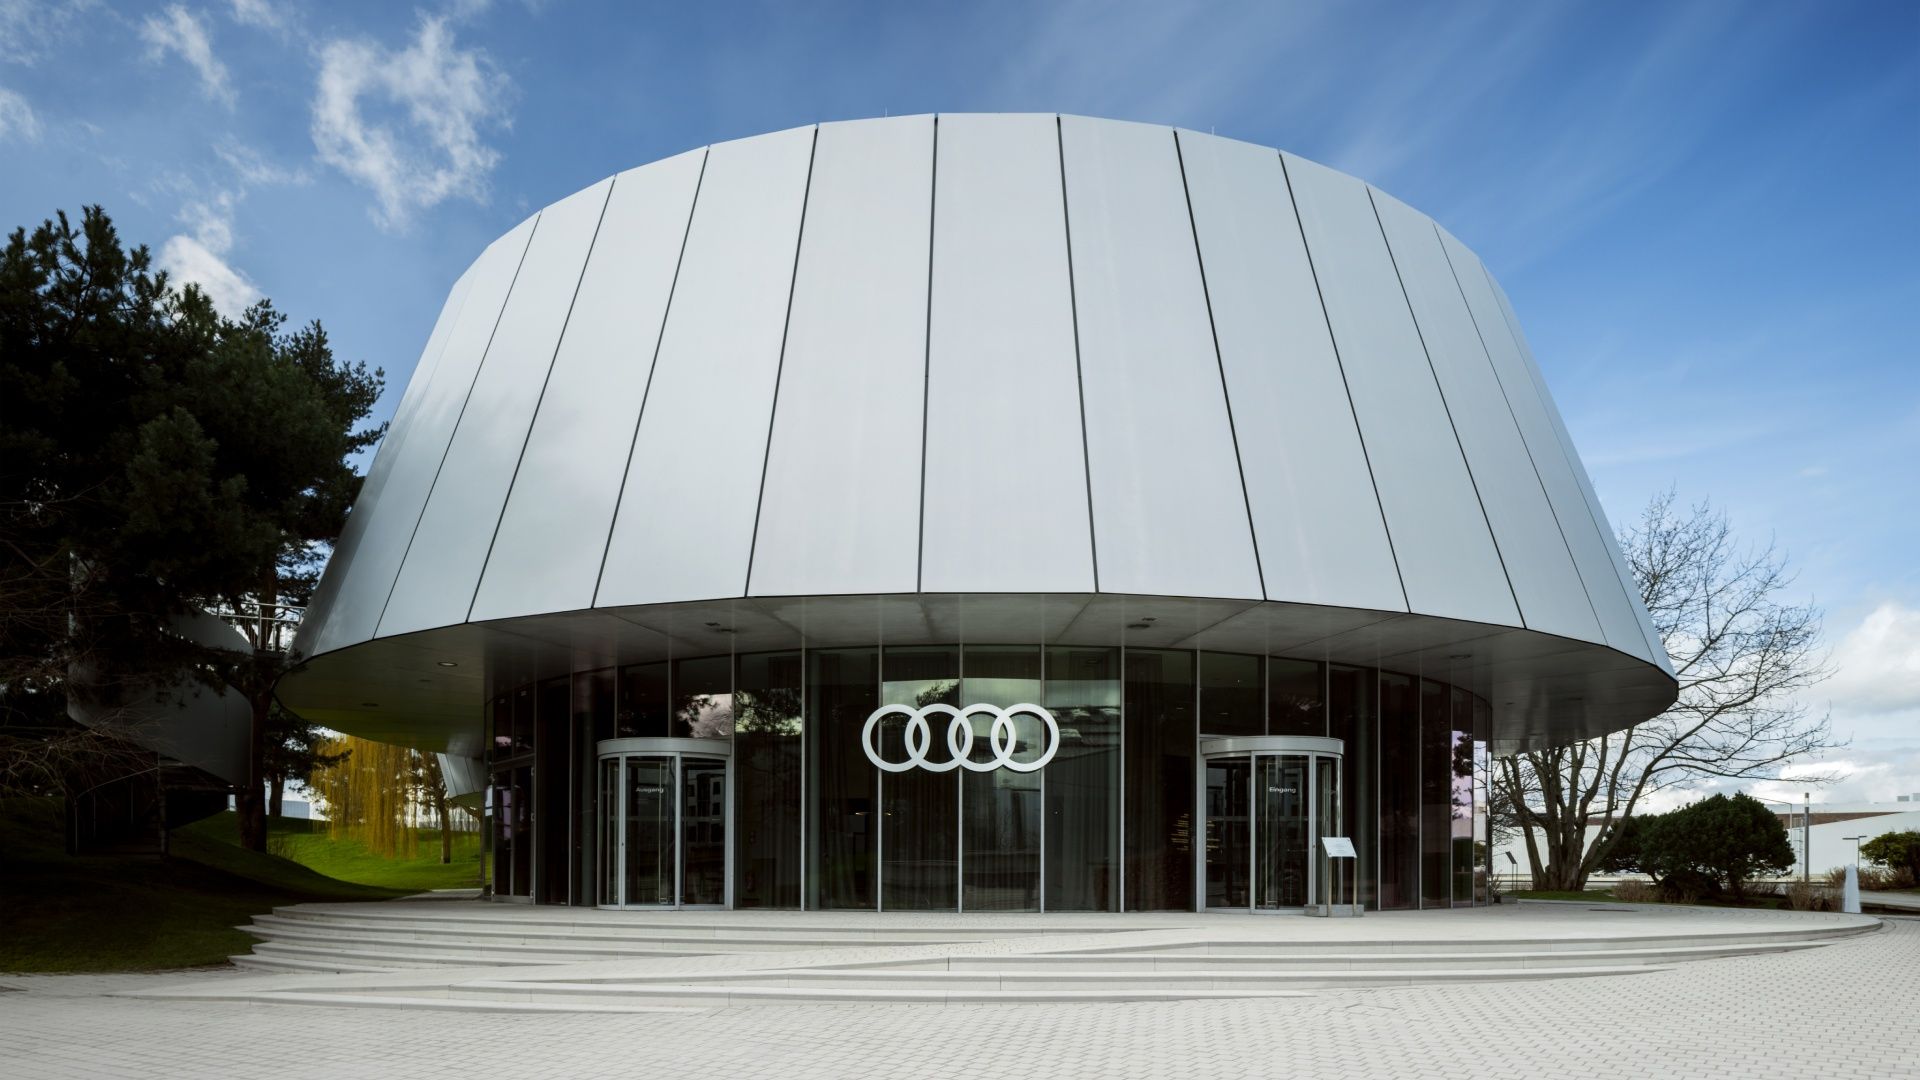 Vue extérieure de l'Audi House of Progress dans l’Autostadt, la ville d’expérimentation automobile de Wolfsburg.